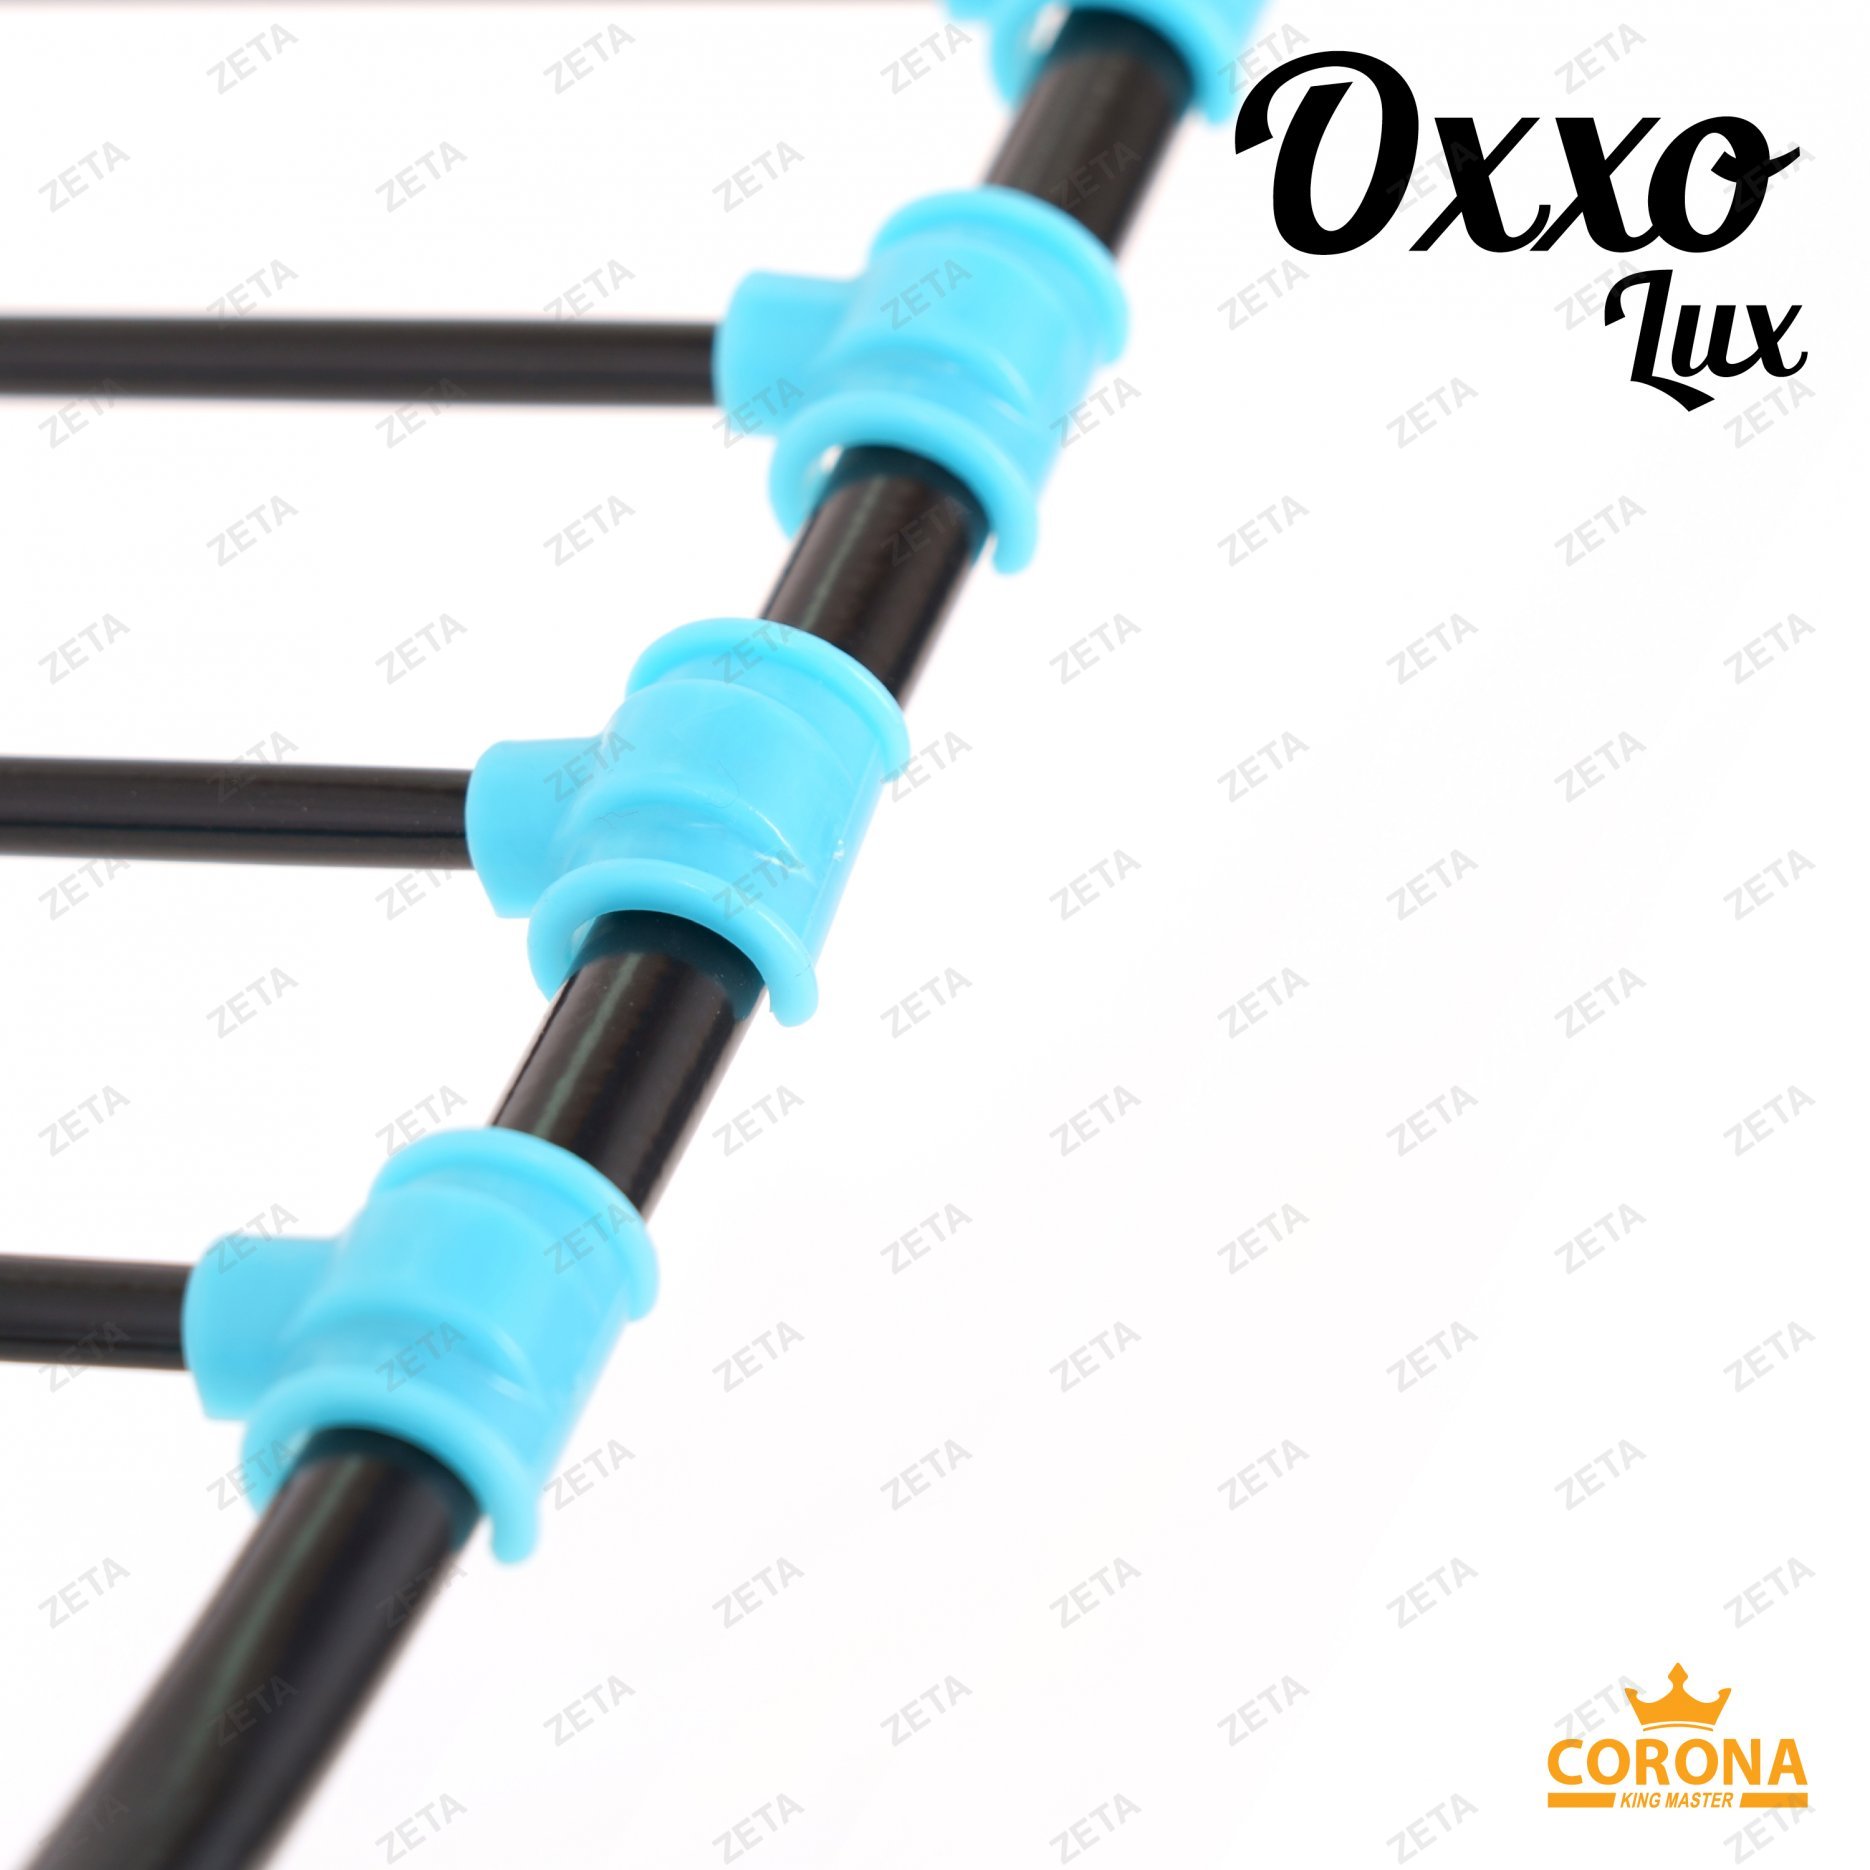 Сушилка для белья "Oxxo lux" №KRT/17-002 - изображение 5